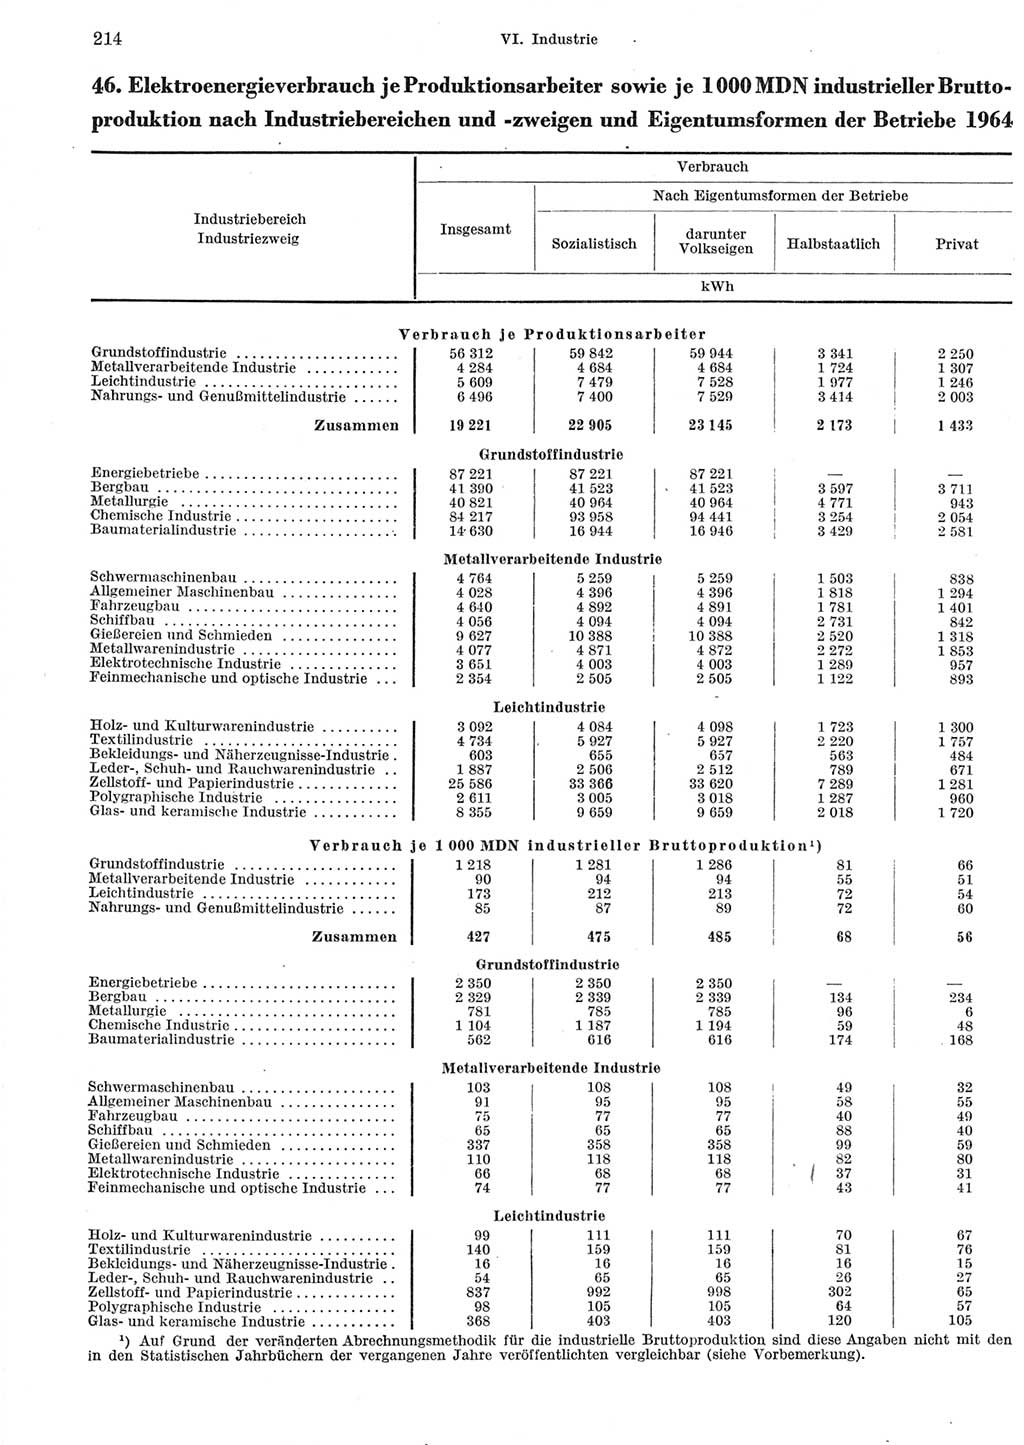 Statistisches Jahrbuch der Deutschen Demokratischen Republik (DDR) 1965, Seite 214 (Stat. Jb. DDR 1965, S. 214)